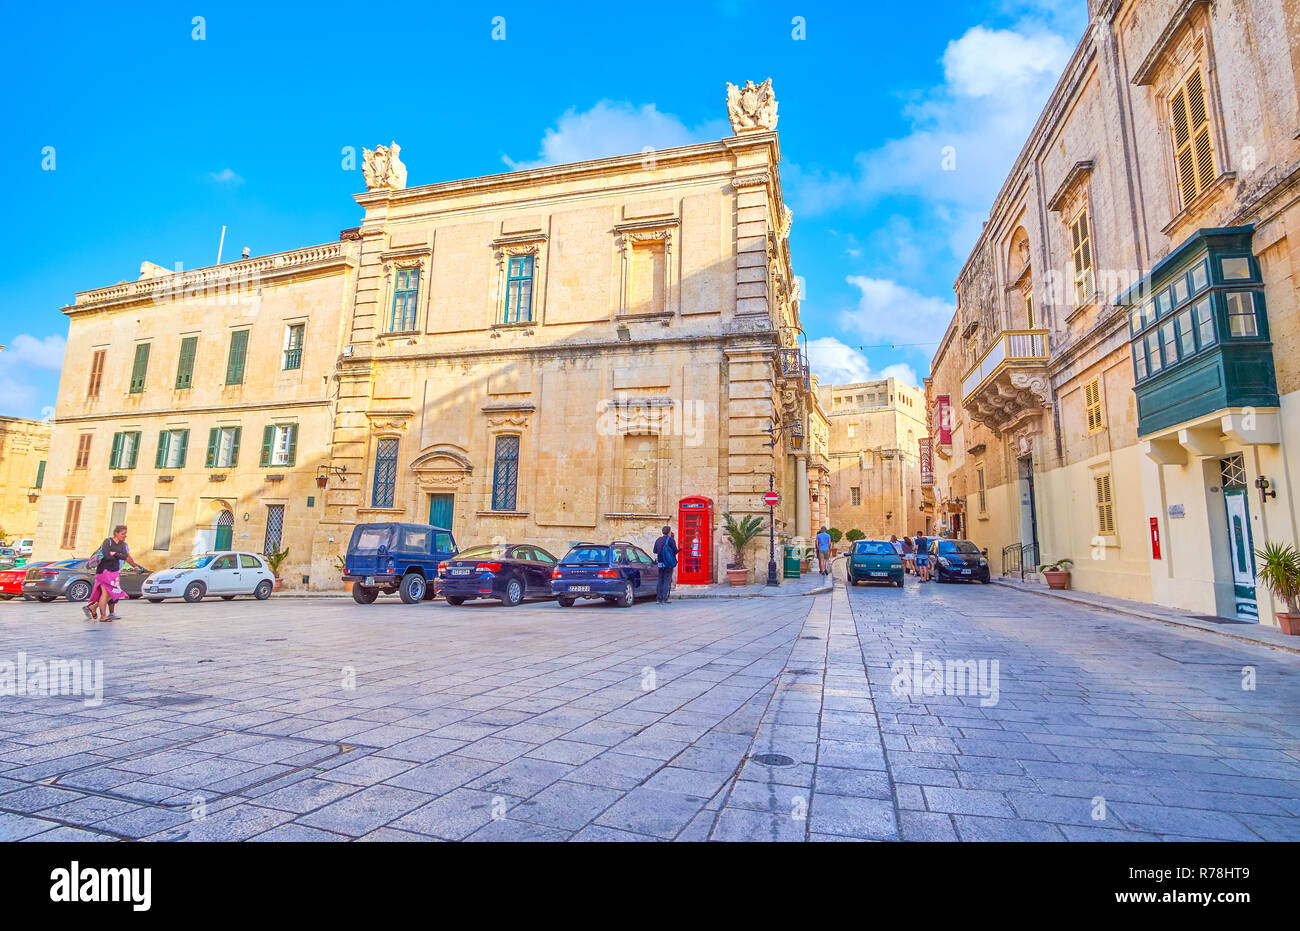 MDINA, Malta - 14 giugno 2018: La scena urbana su San Paolo Piazza con vecchi edifici medievali, con uno stile rétro red cabina telefonica, il 14 giugno in Mdina. Foto Stock